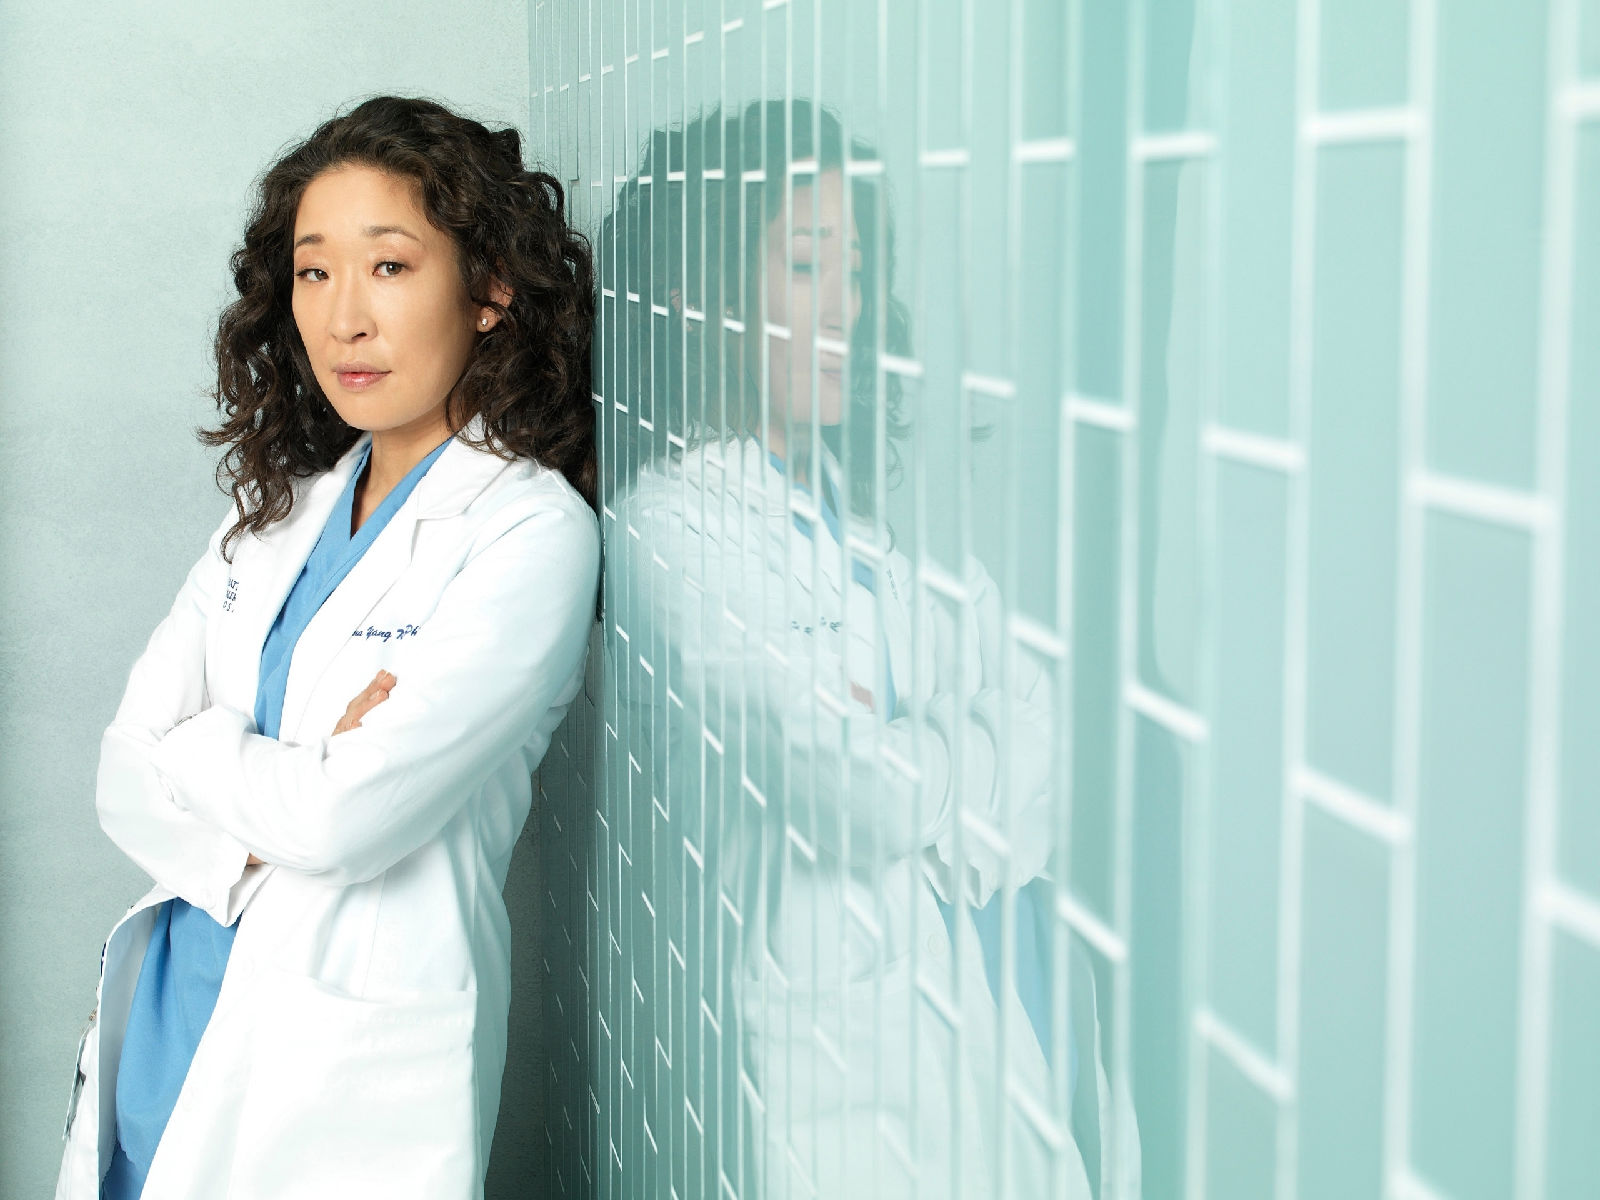 Dr.Cristina Yang